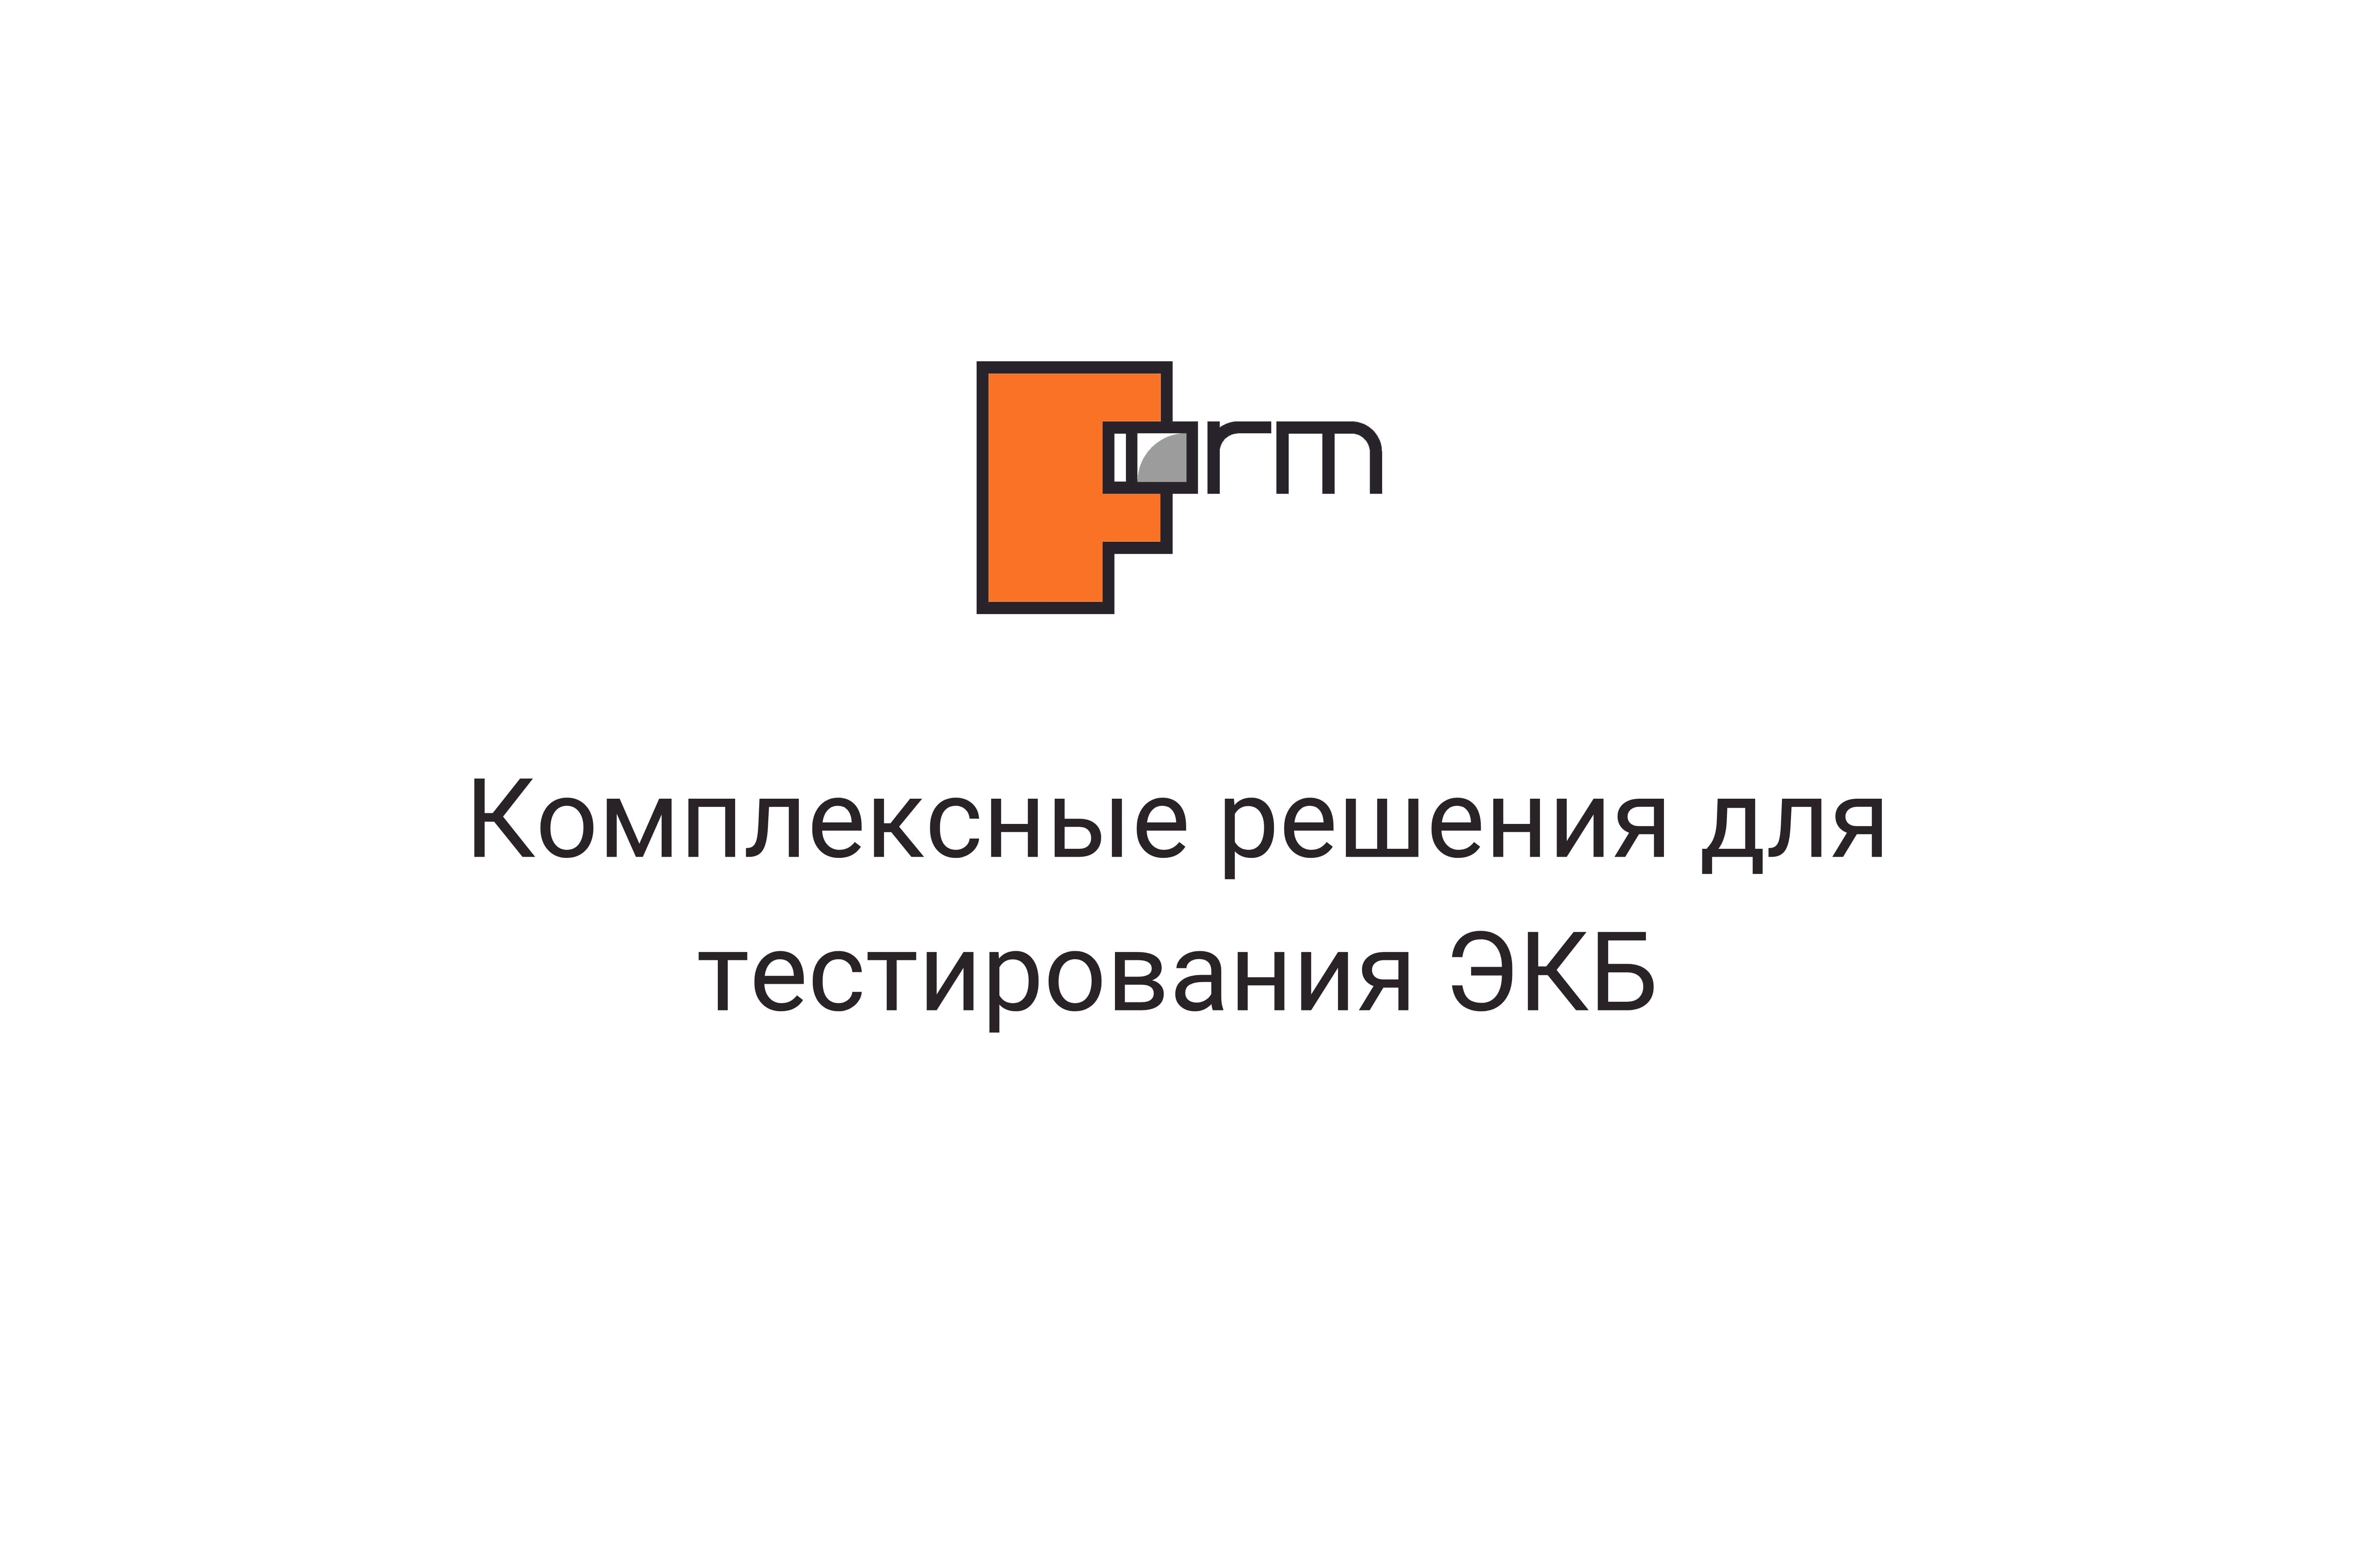 Компания ФОРМ представит решения "под ключ" для автоматизации и метрологического обеспечения испытаний ЭКБ